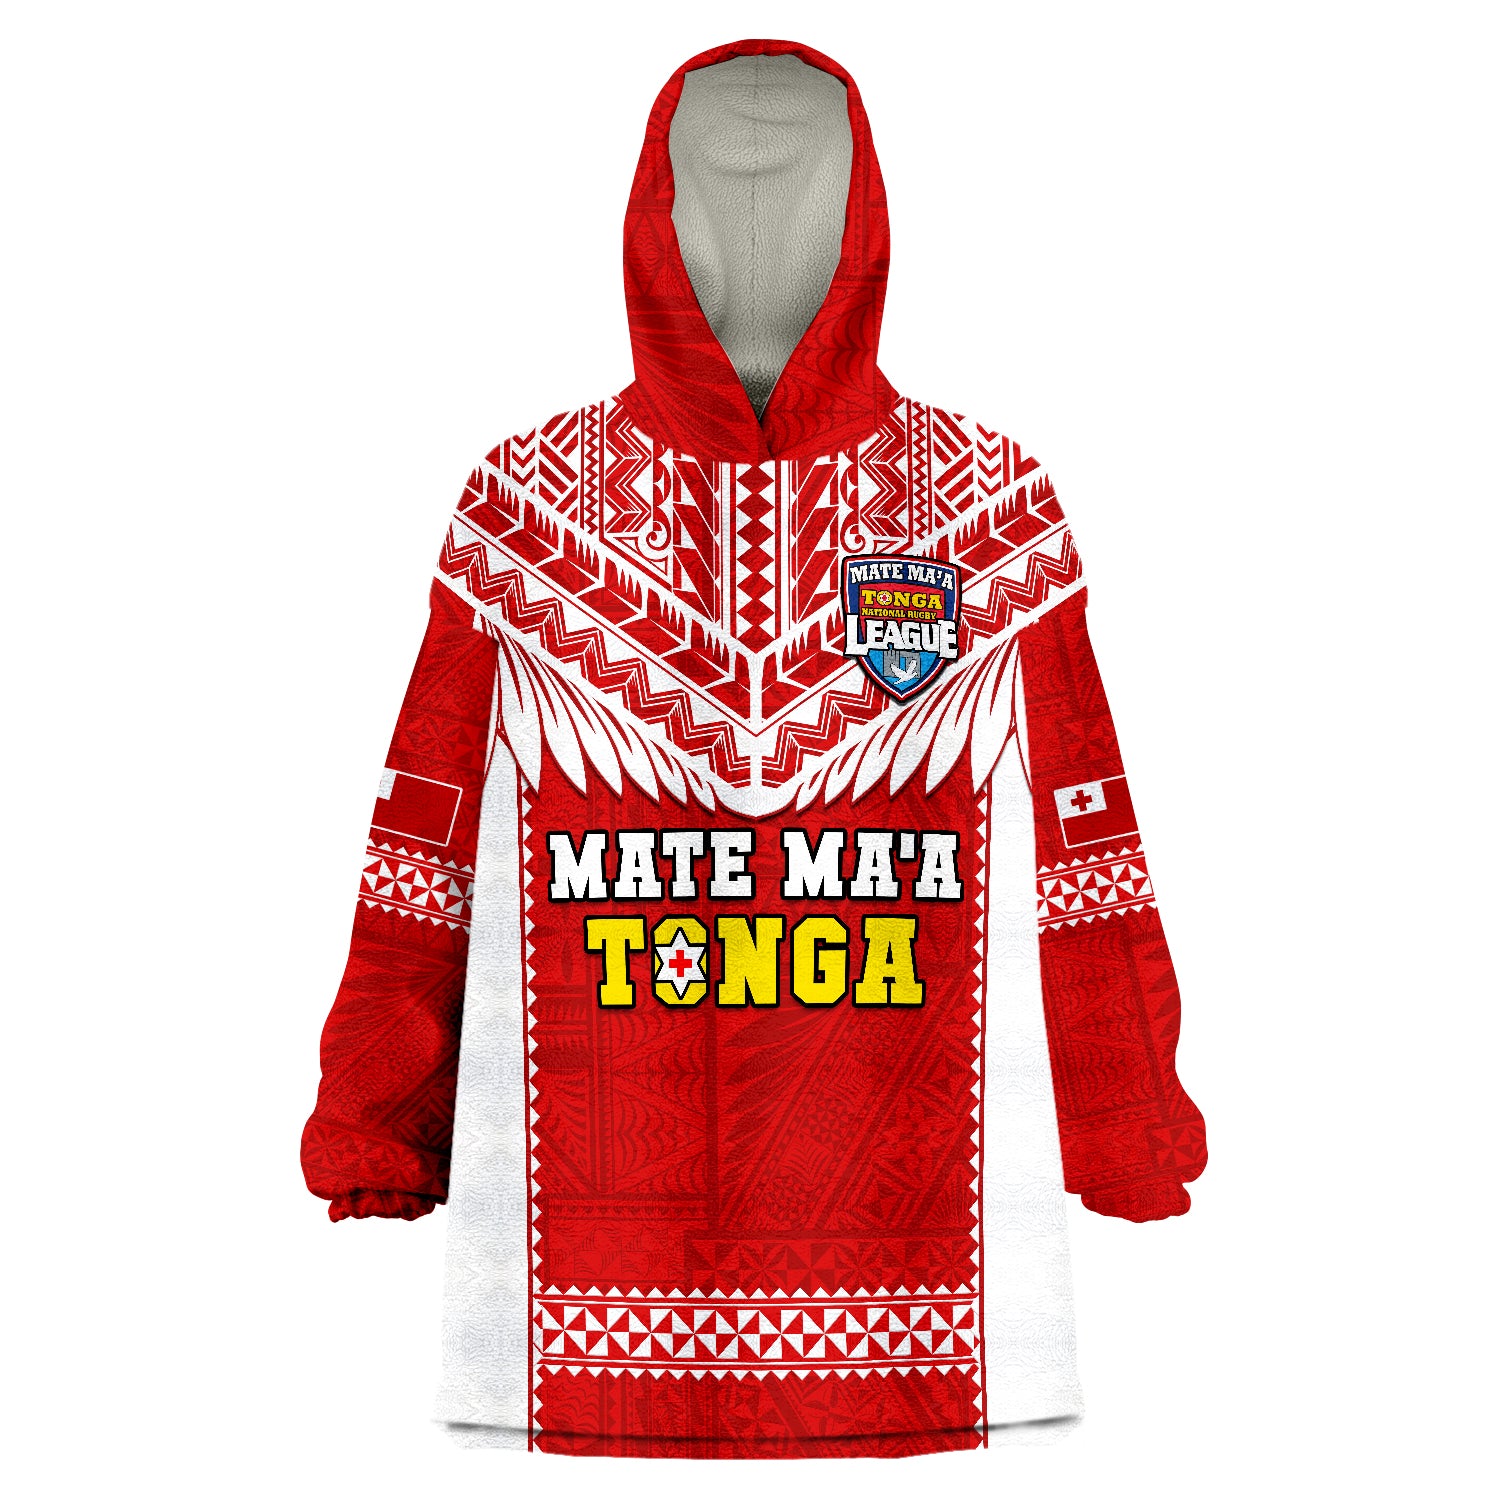 tonga-rugby-mate-maa-tonga-pacific-ngatu-white-wearable-blanket-hoodie